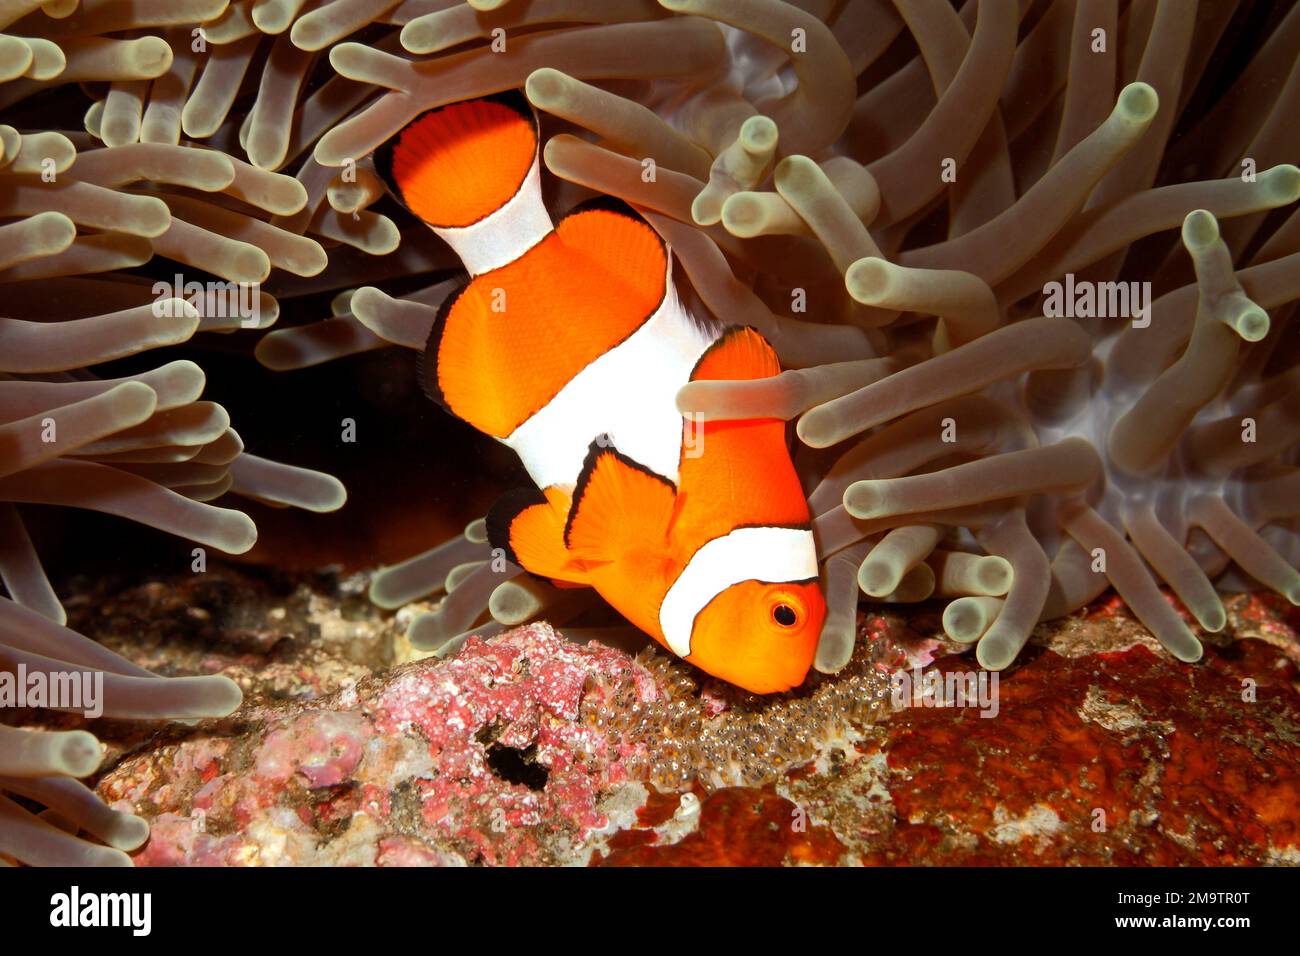 Clown anemonefish Amphirion ocellaris tendente uova deposte alla base del magnifico ospite Anemone, Heteractis magnifica. Gli occhi dello sviluppo Foto Stock